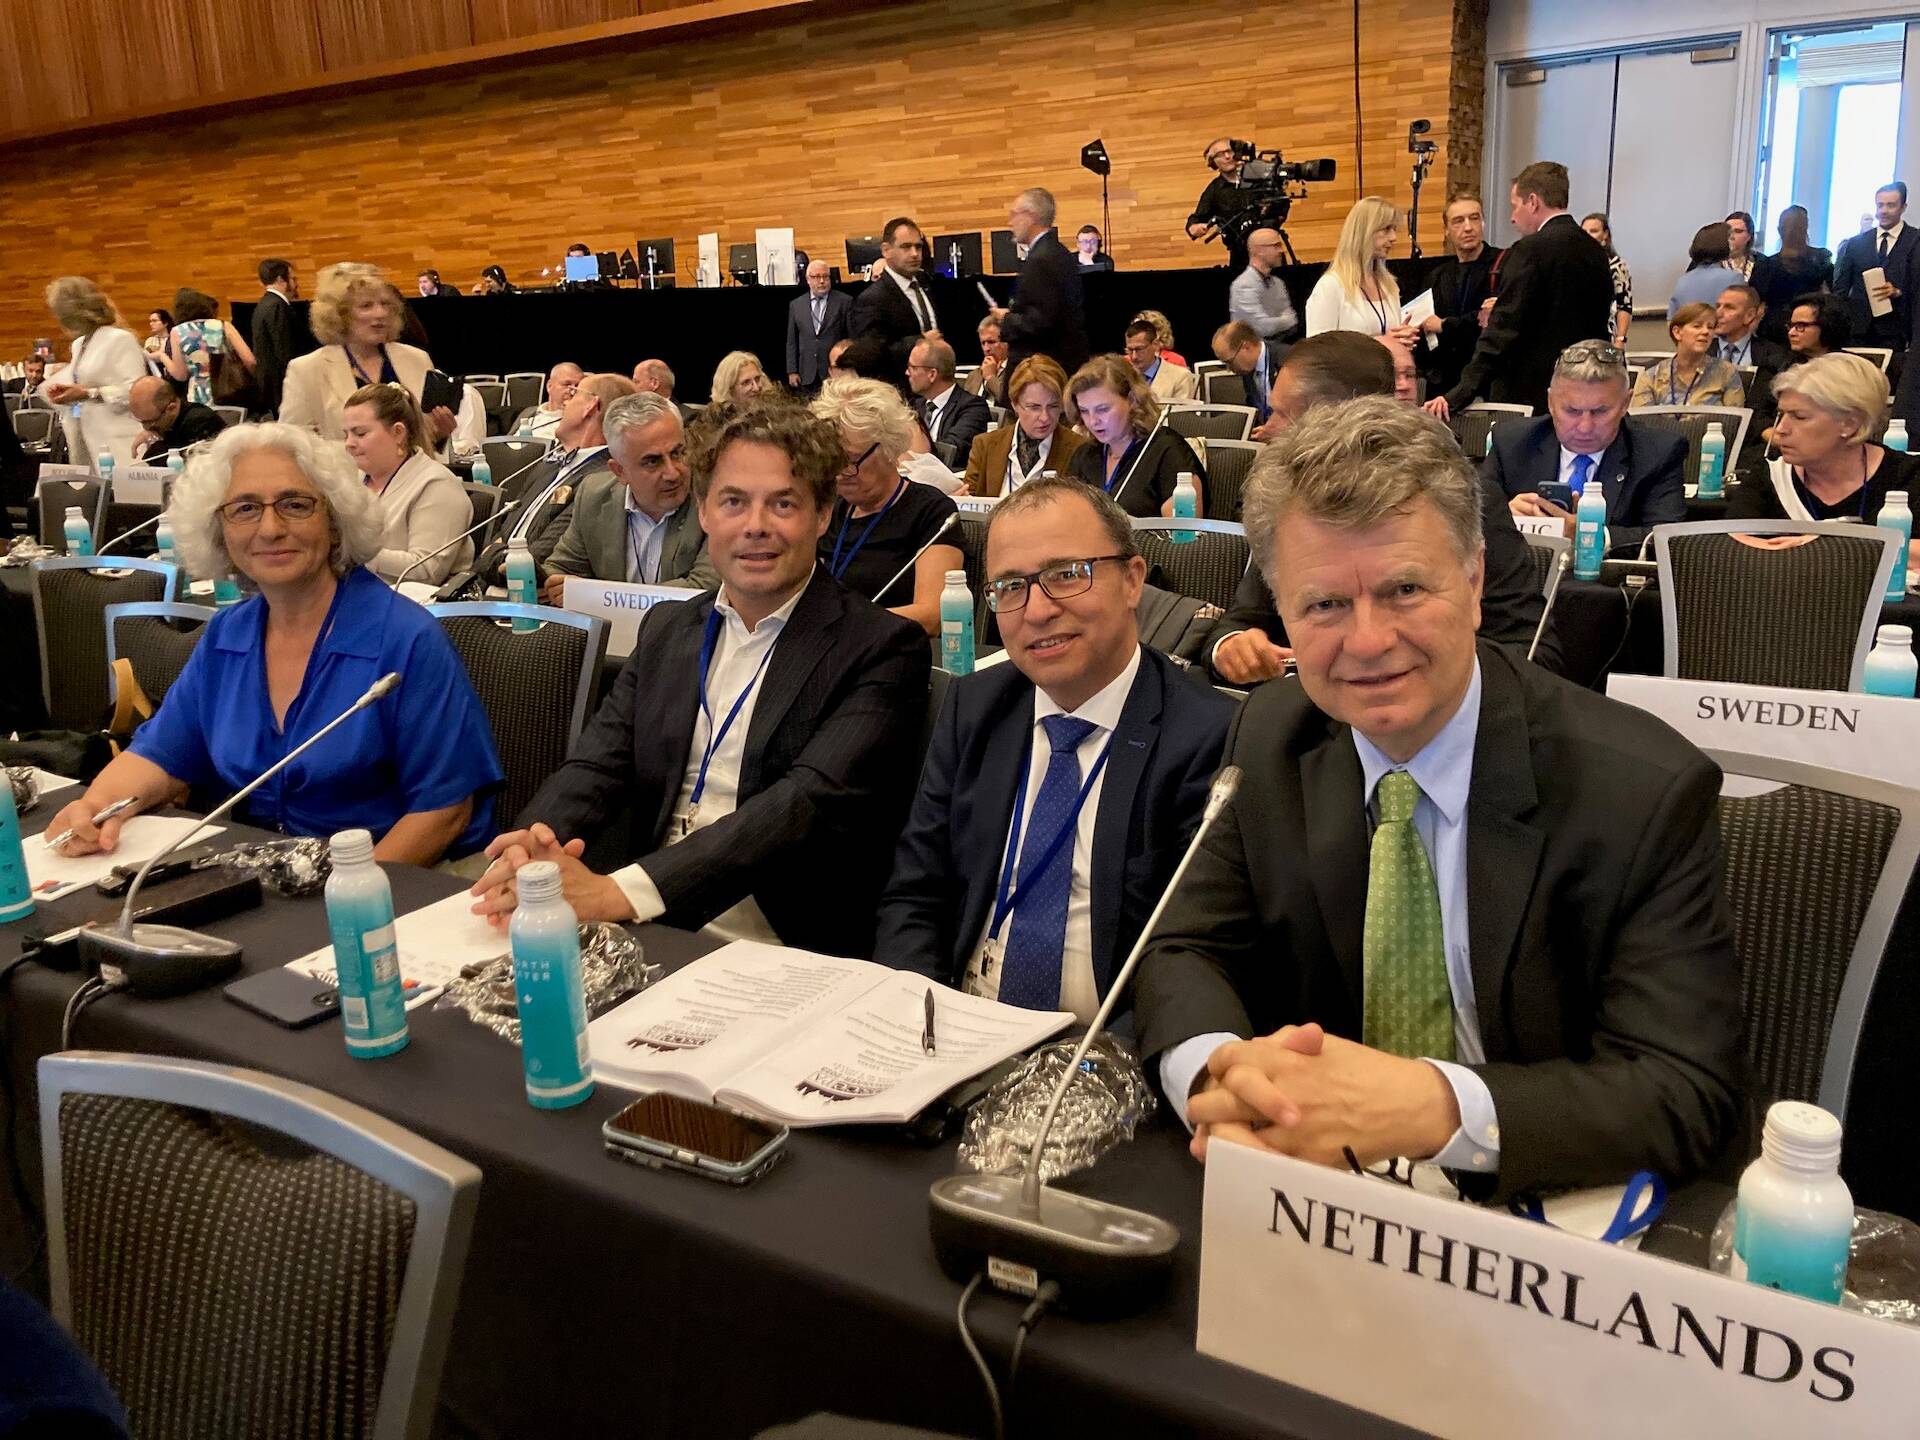 De Nederlandse Kamerleden die deelnamen aan de bijeenkomst in Vancouver